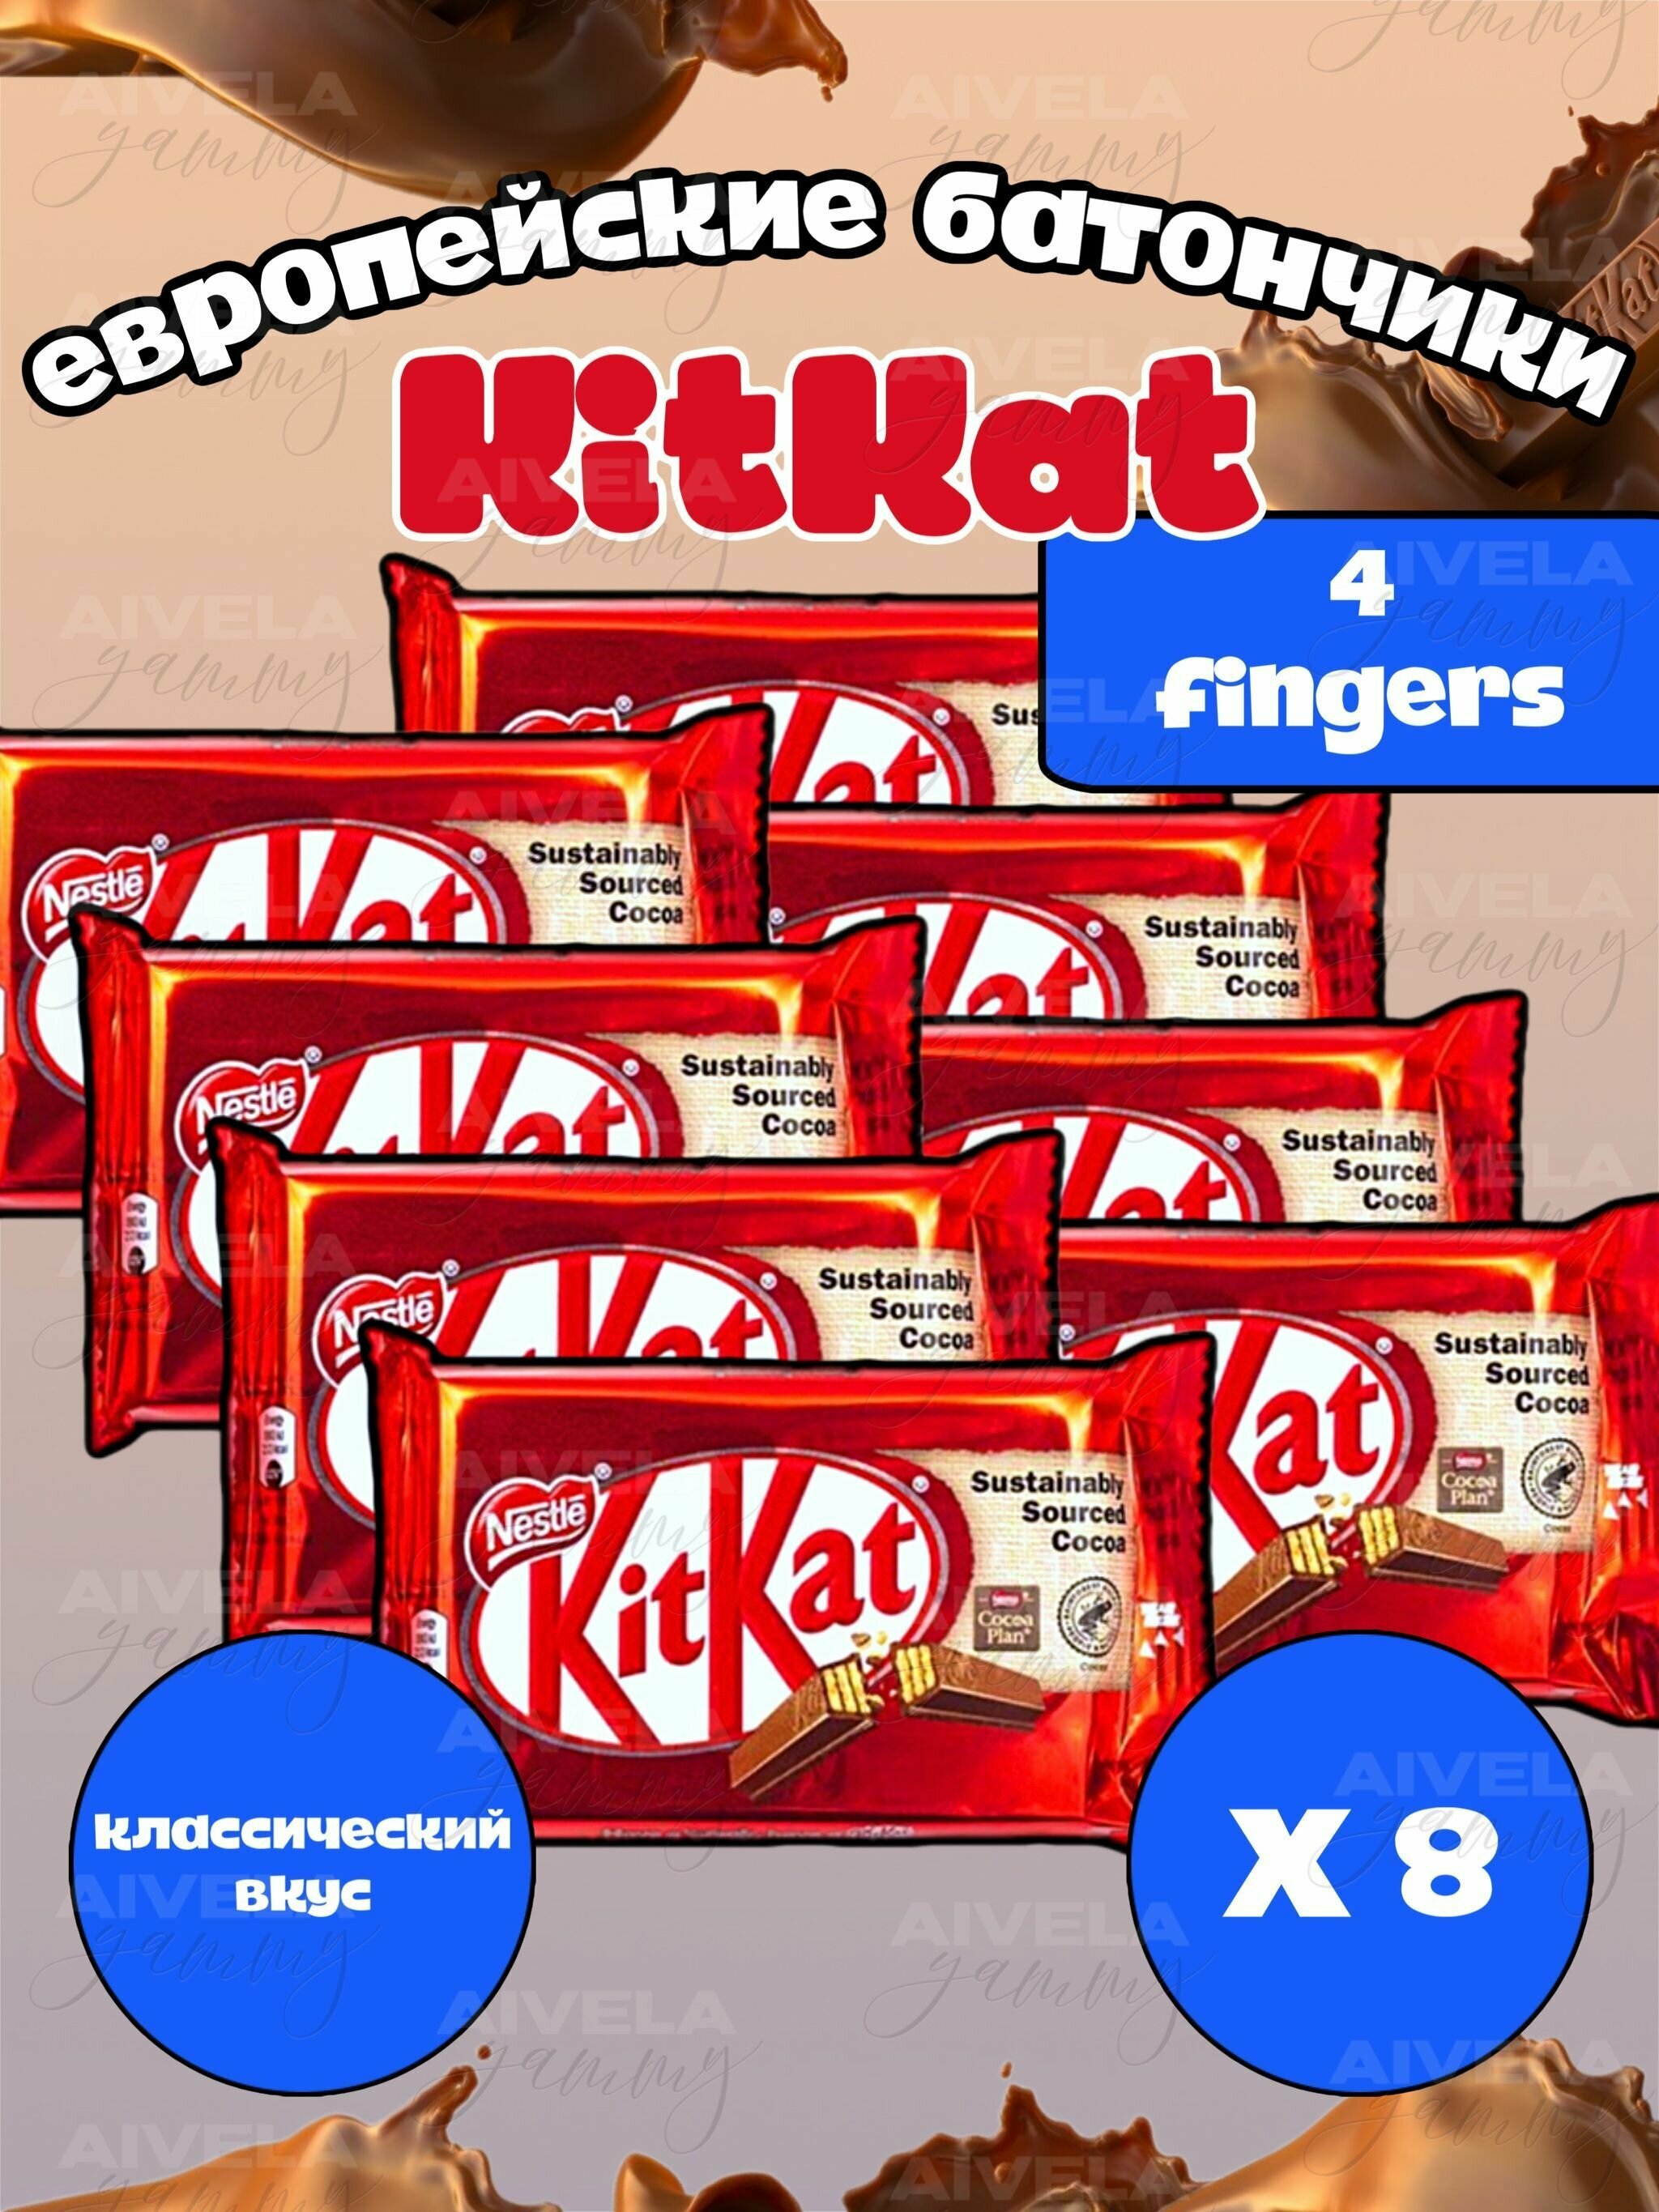 Шоколадный батончик KitKat 4 Fingers / Киткат шоколад 4 пальца классический вкус 8 шт (Европа) - фотография № 1